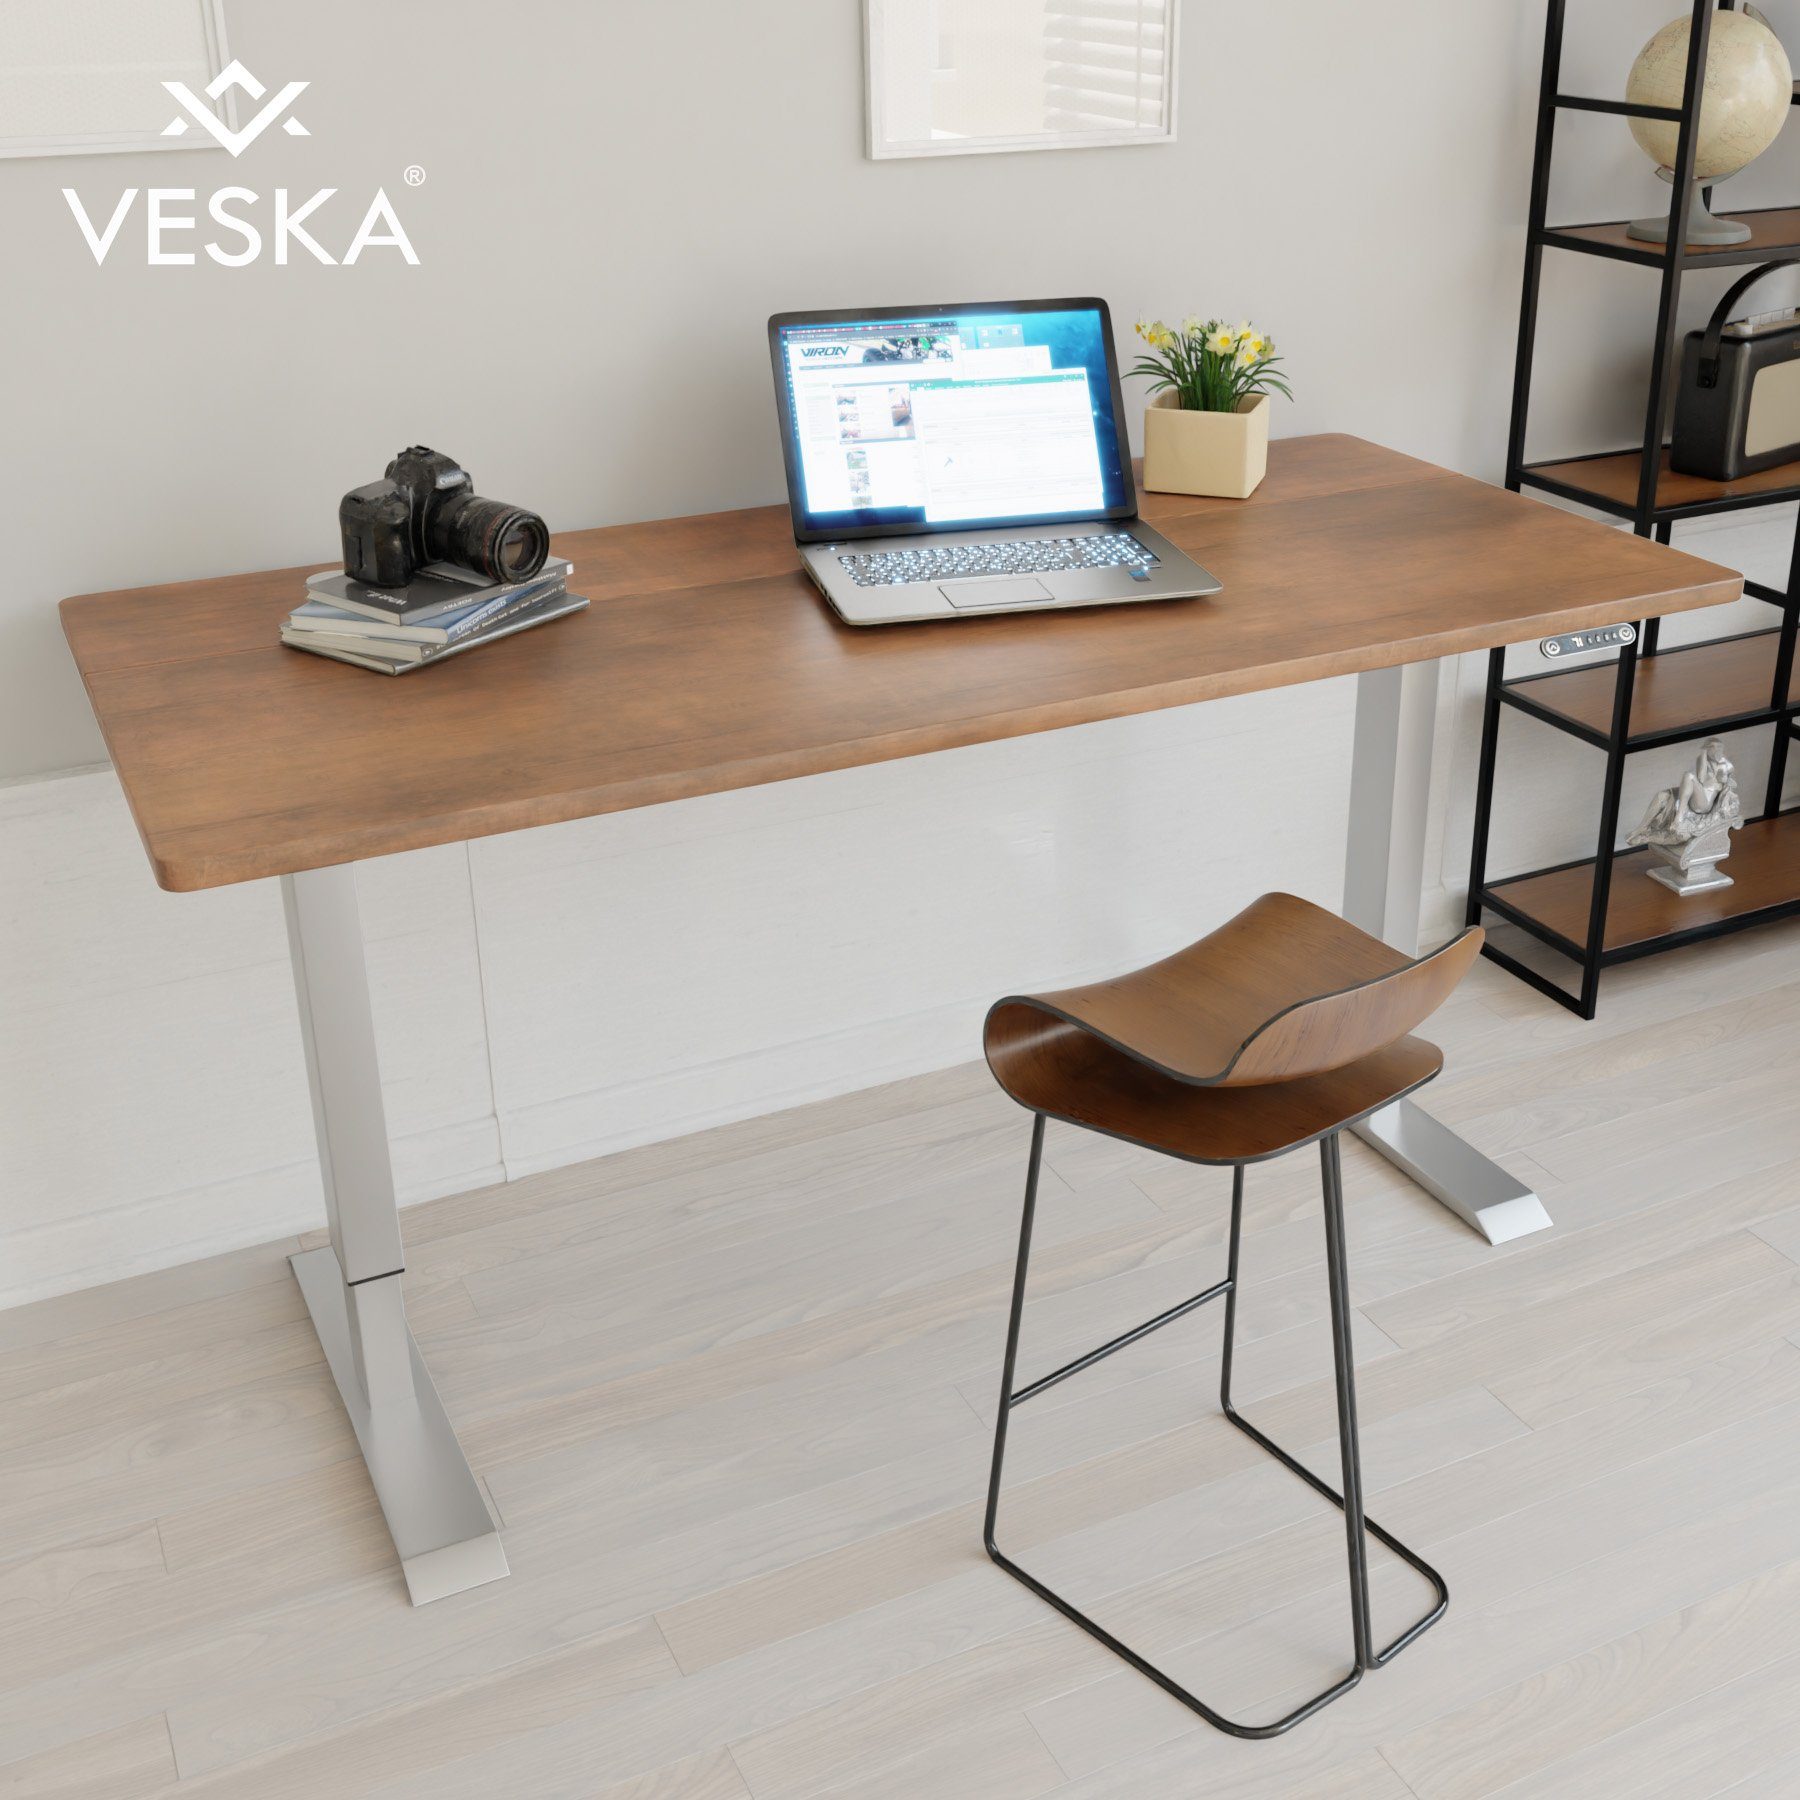 VESKA Schreibtisch Höhenverstellbar 140 x 70 cm - Bürotisch Elektrisch mit Touchscreen - Sitz- & Stehpult Home Office Silber | Antik